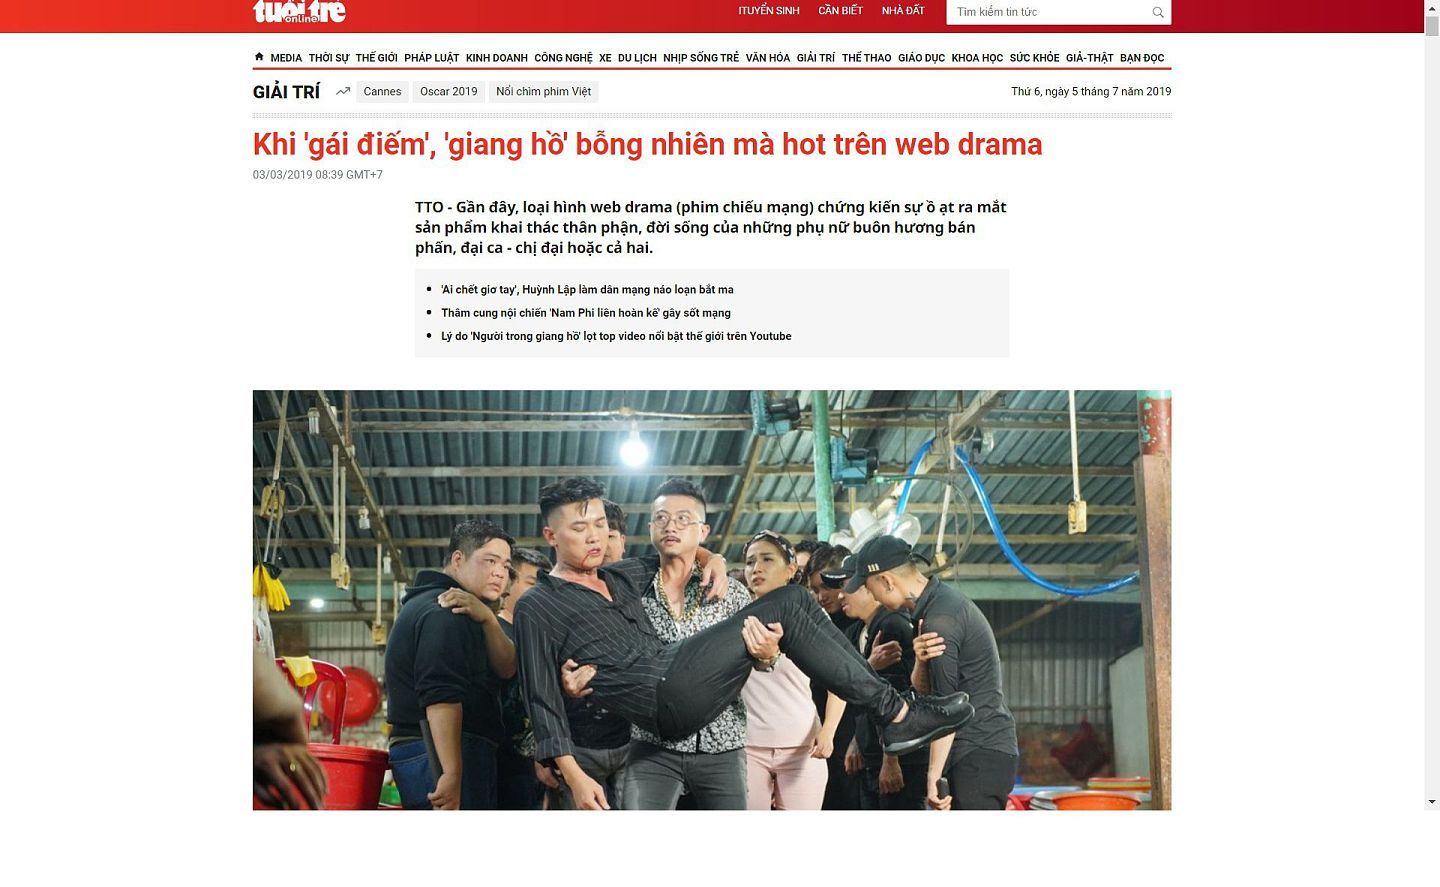 越南《年轻人报》曾批评网络剧“娼妓”（gai diem）“江湖”（giang ho）内容猖獗。剧照为越南2018年流行网络电影《鱼翅前传》（Vi ca tien truyen），剧情讲述黑帮恩怨。到2020年，类似内容在越南坊间开始凋零。（越南《年轻人报》截图）